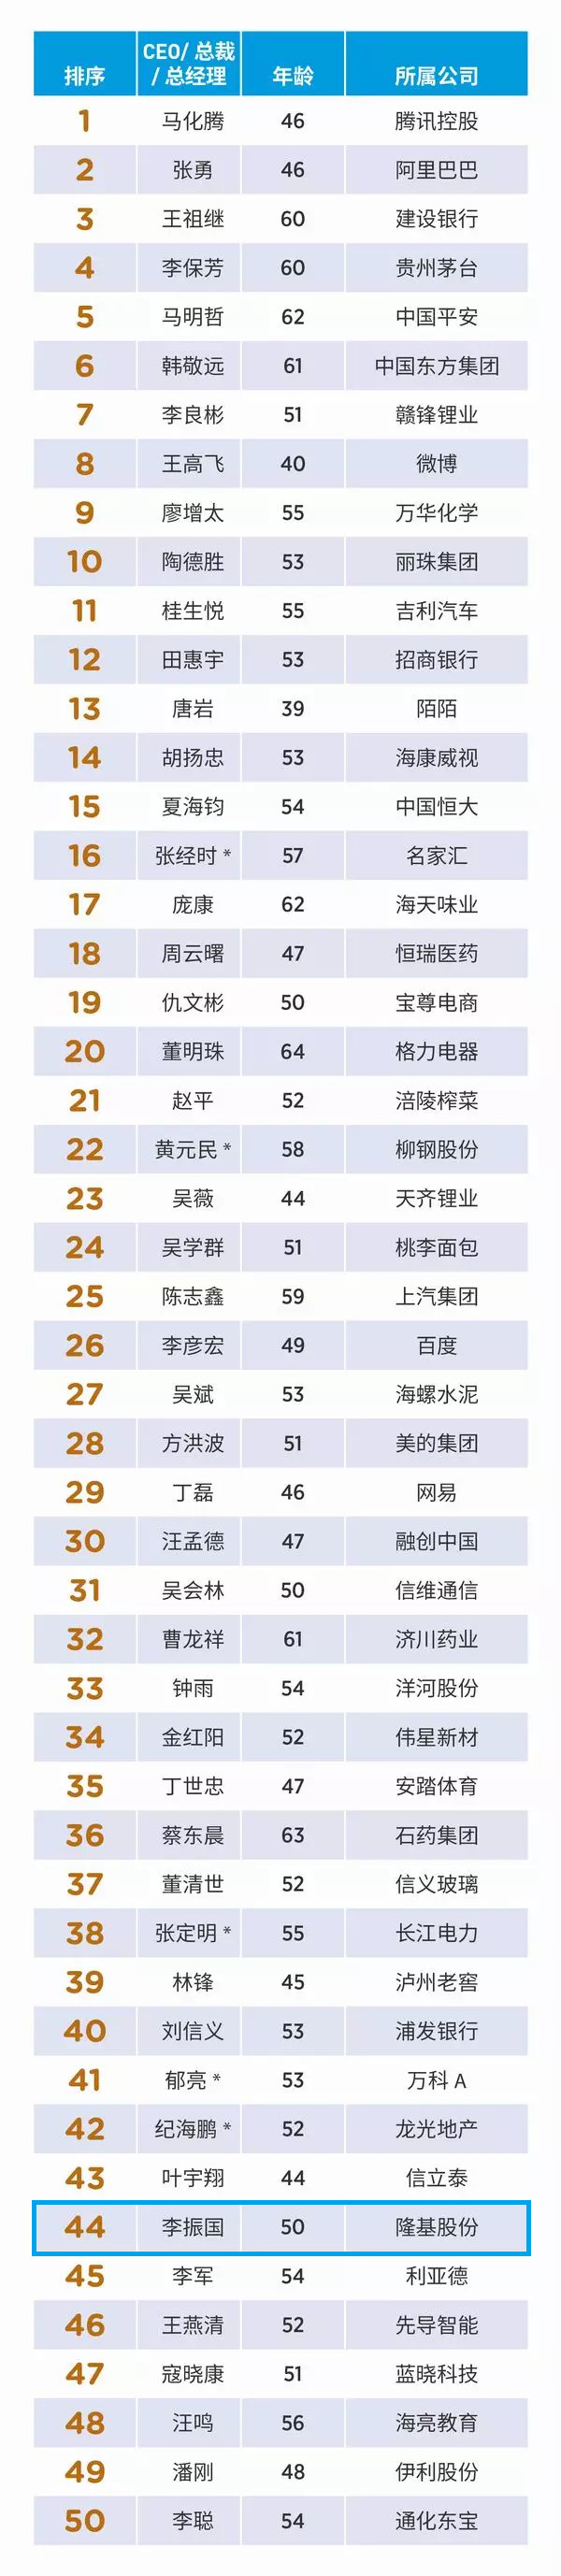 隆基股份总裁入选福布斯2018中国上市公司50位最佳CEO榜